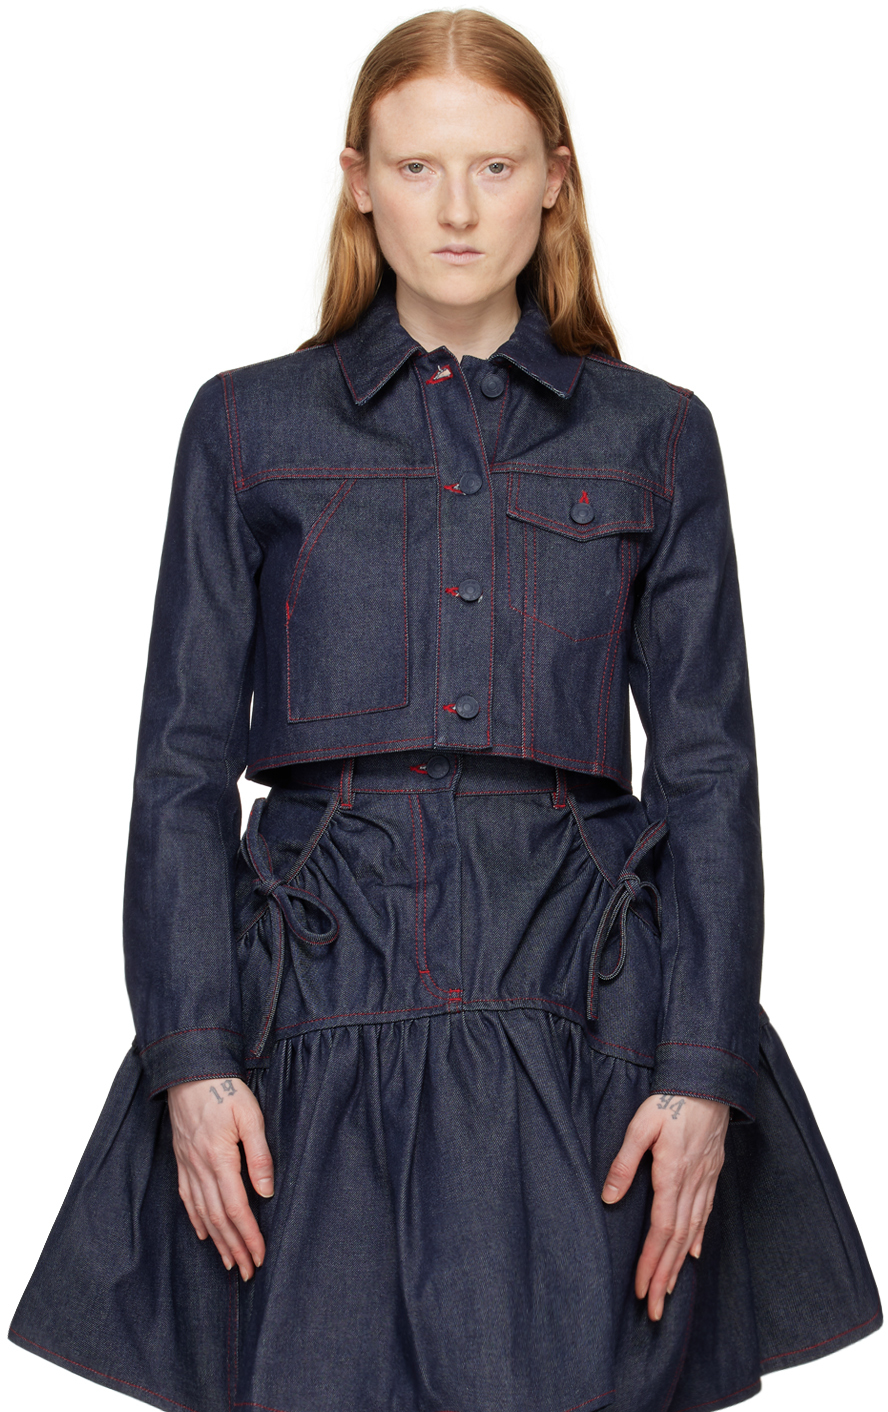 Джинсовая куртка цвета индиго Gracie Cecilie Bahnsen цена и фото